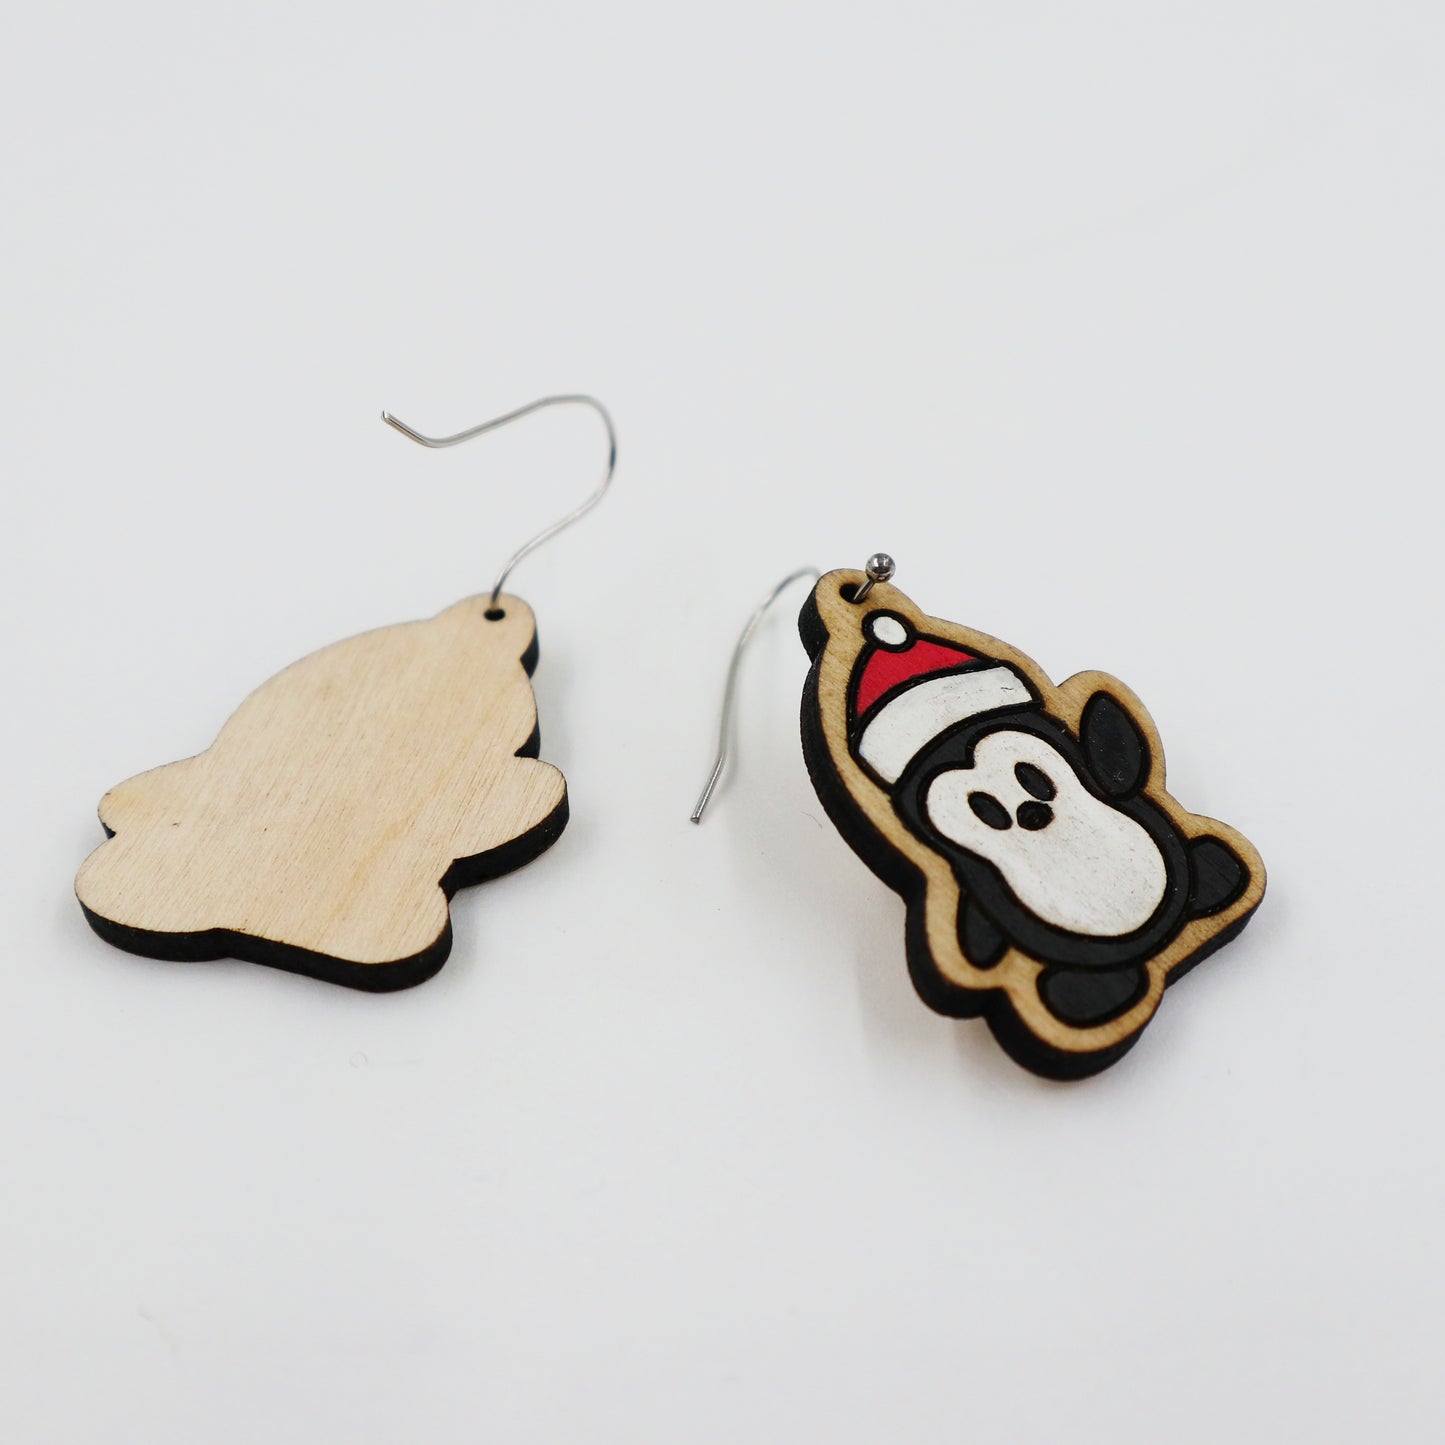 Wooden penguin Christmas earrings